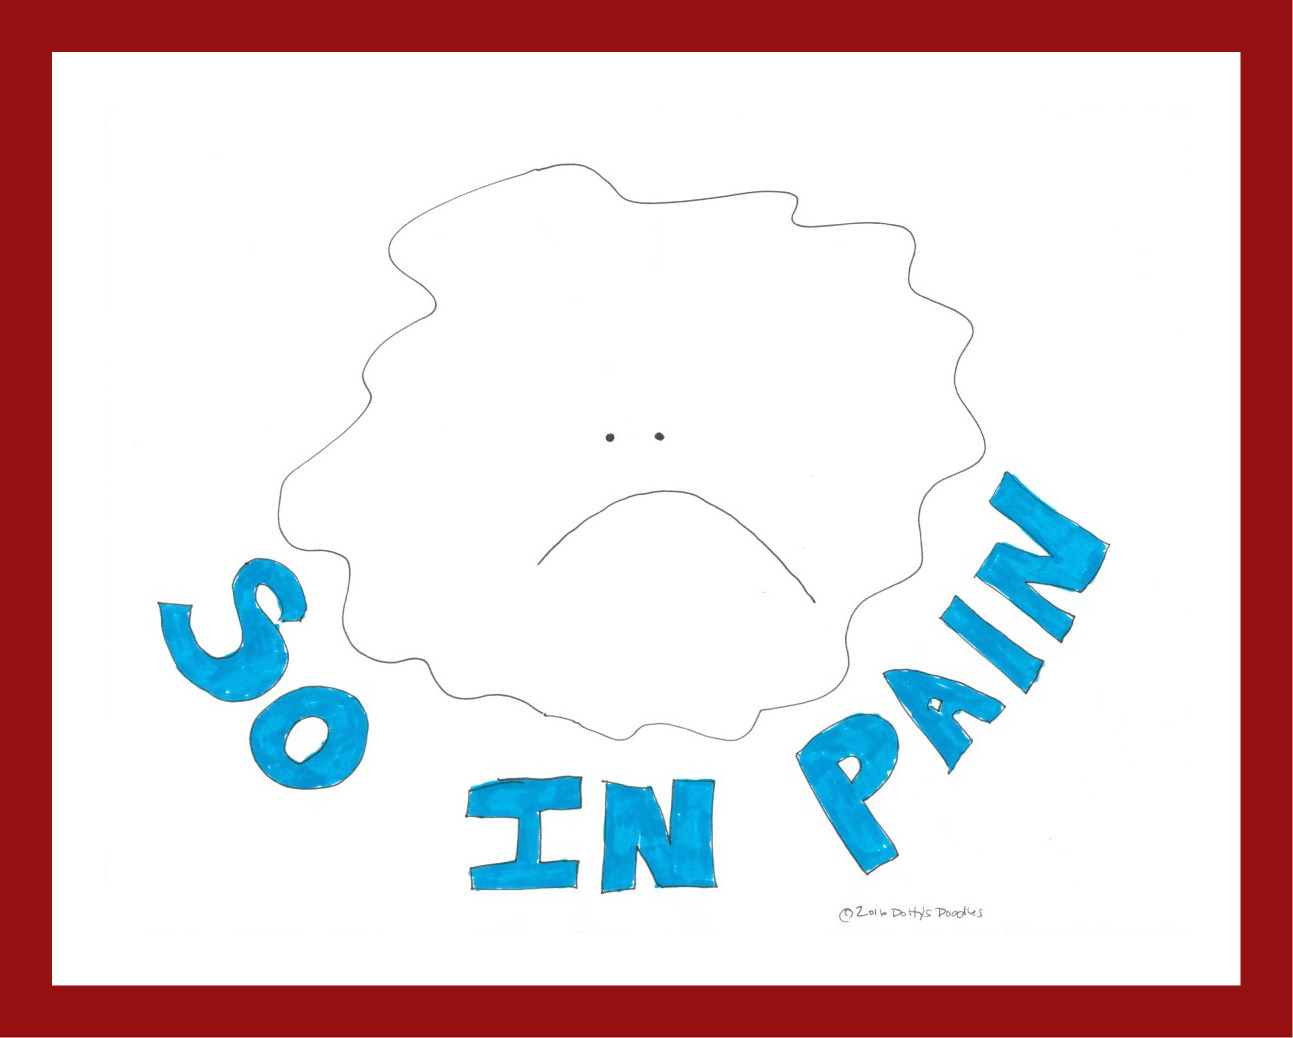 So in Pain